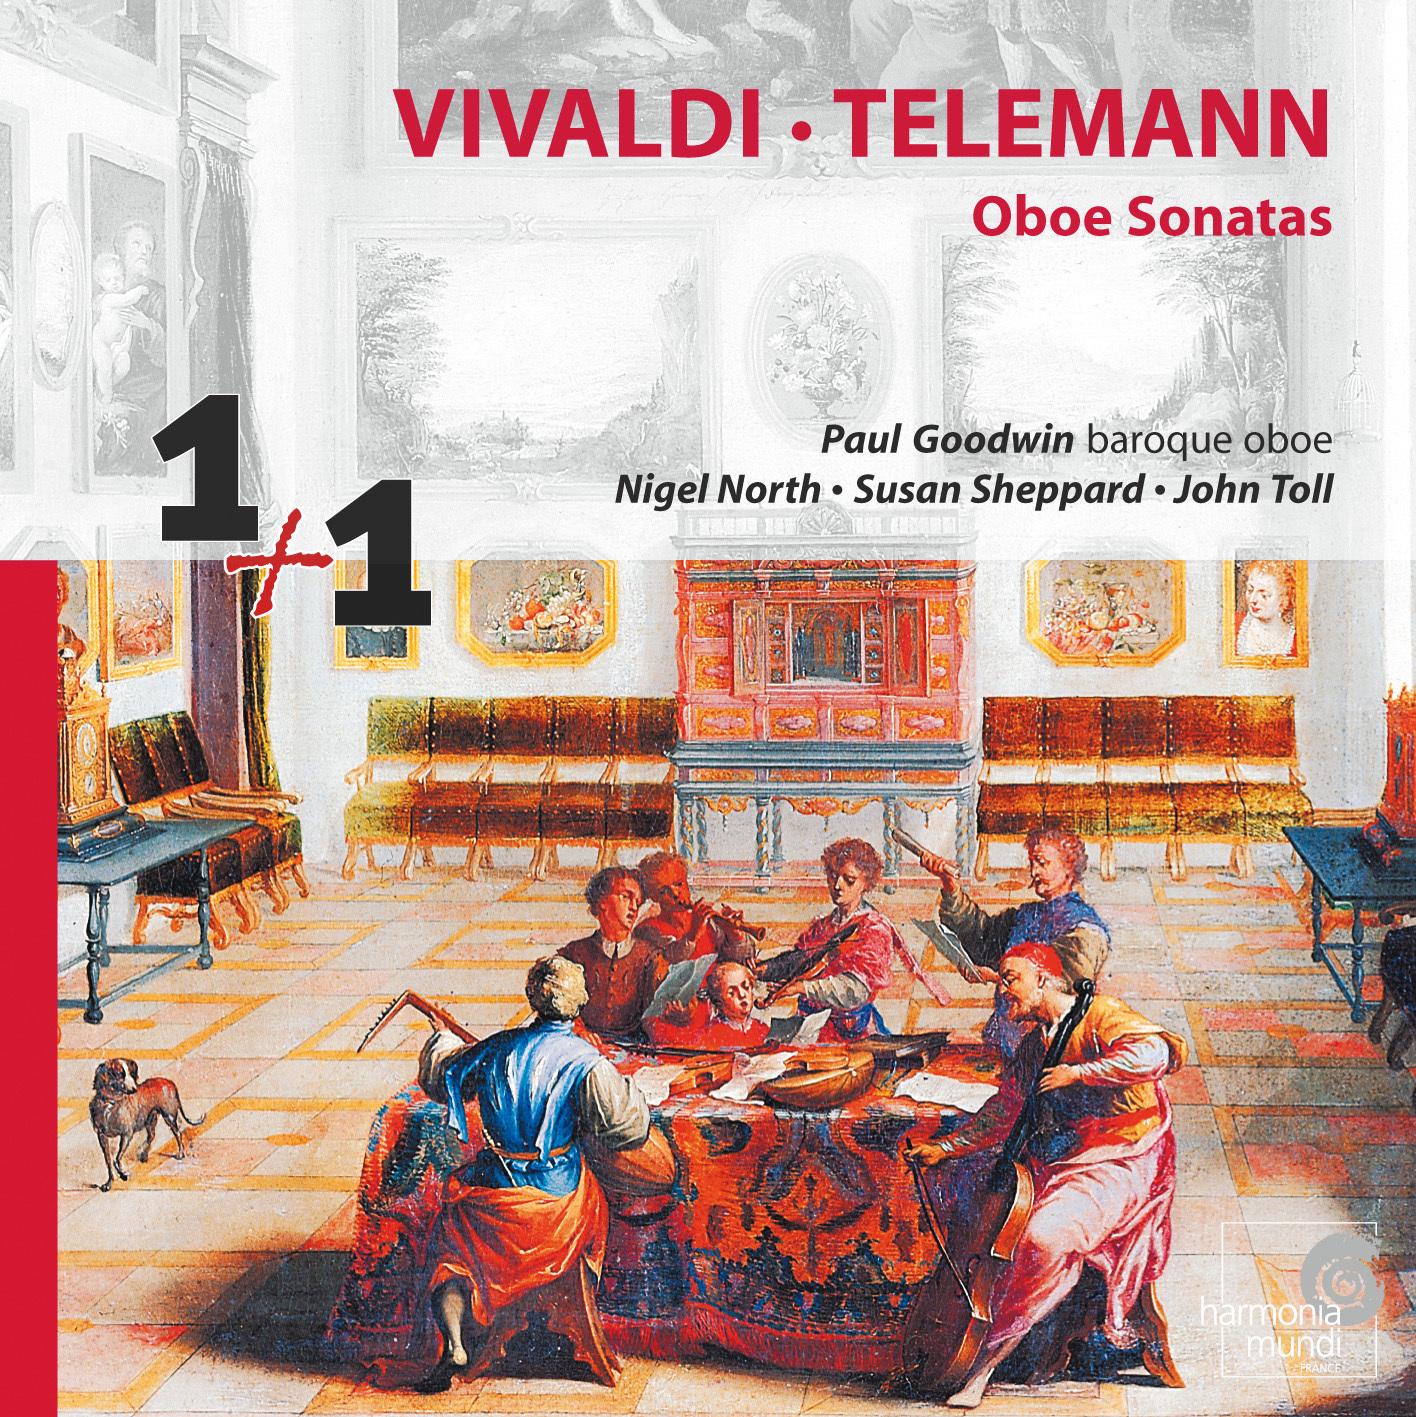 Oboe Sonata In A Major, RV 59: III. Pastorale, ad libitum